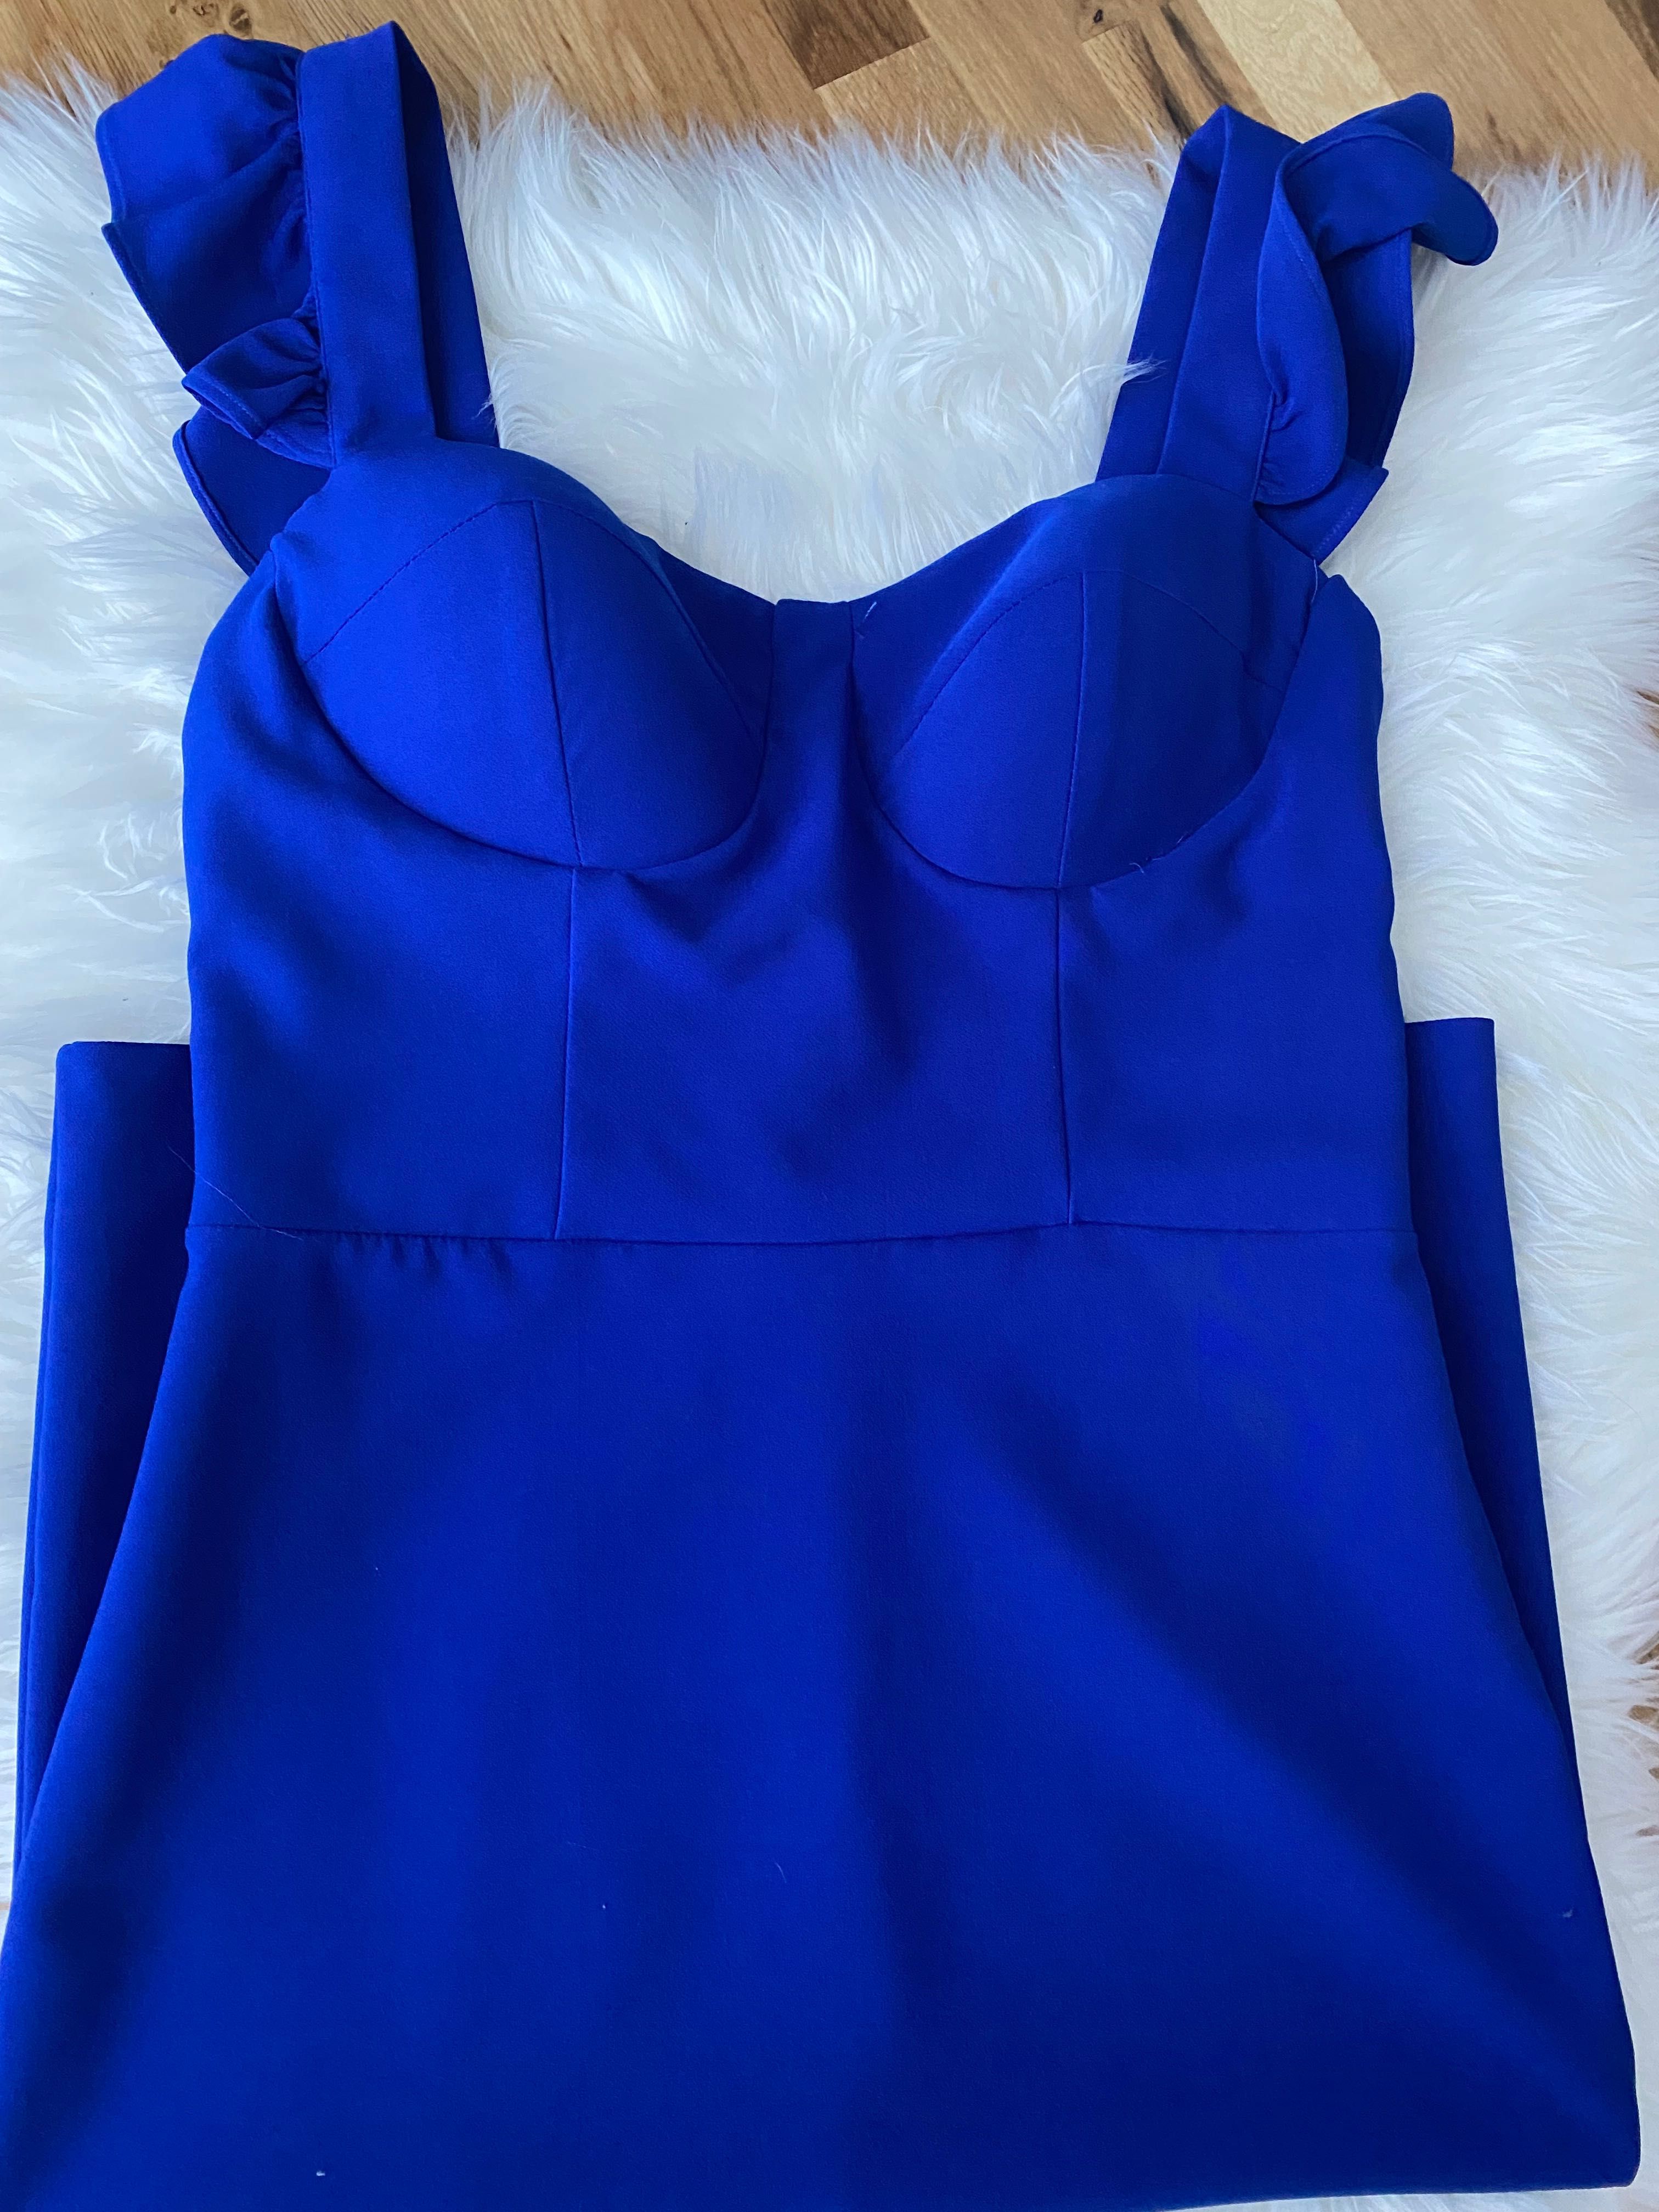 НОВО! Дамска официална рокля турски син цвят размер 40